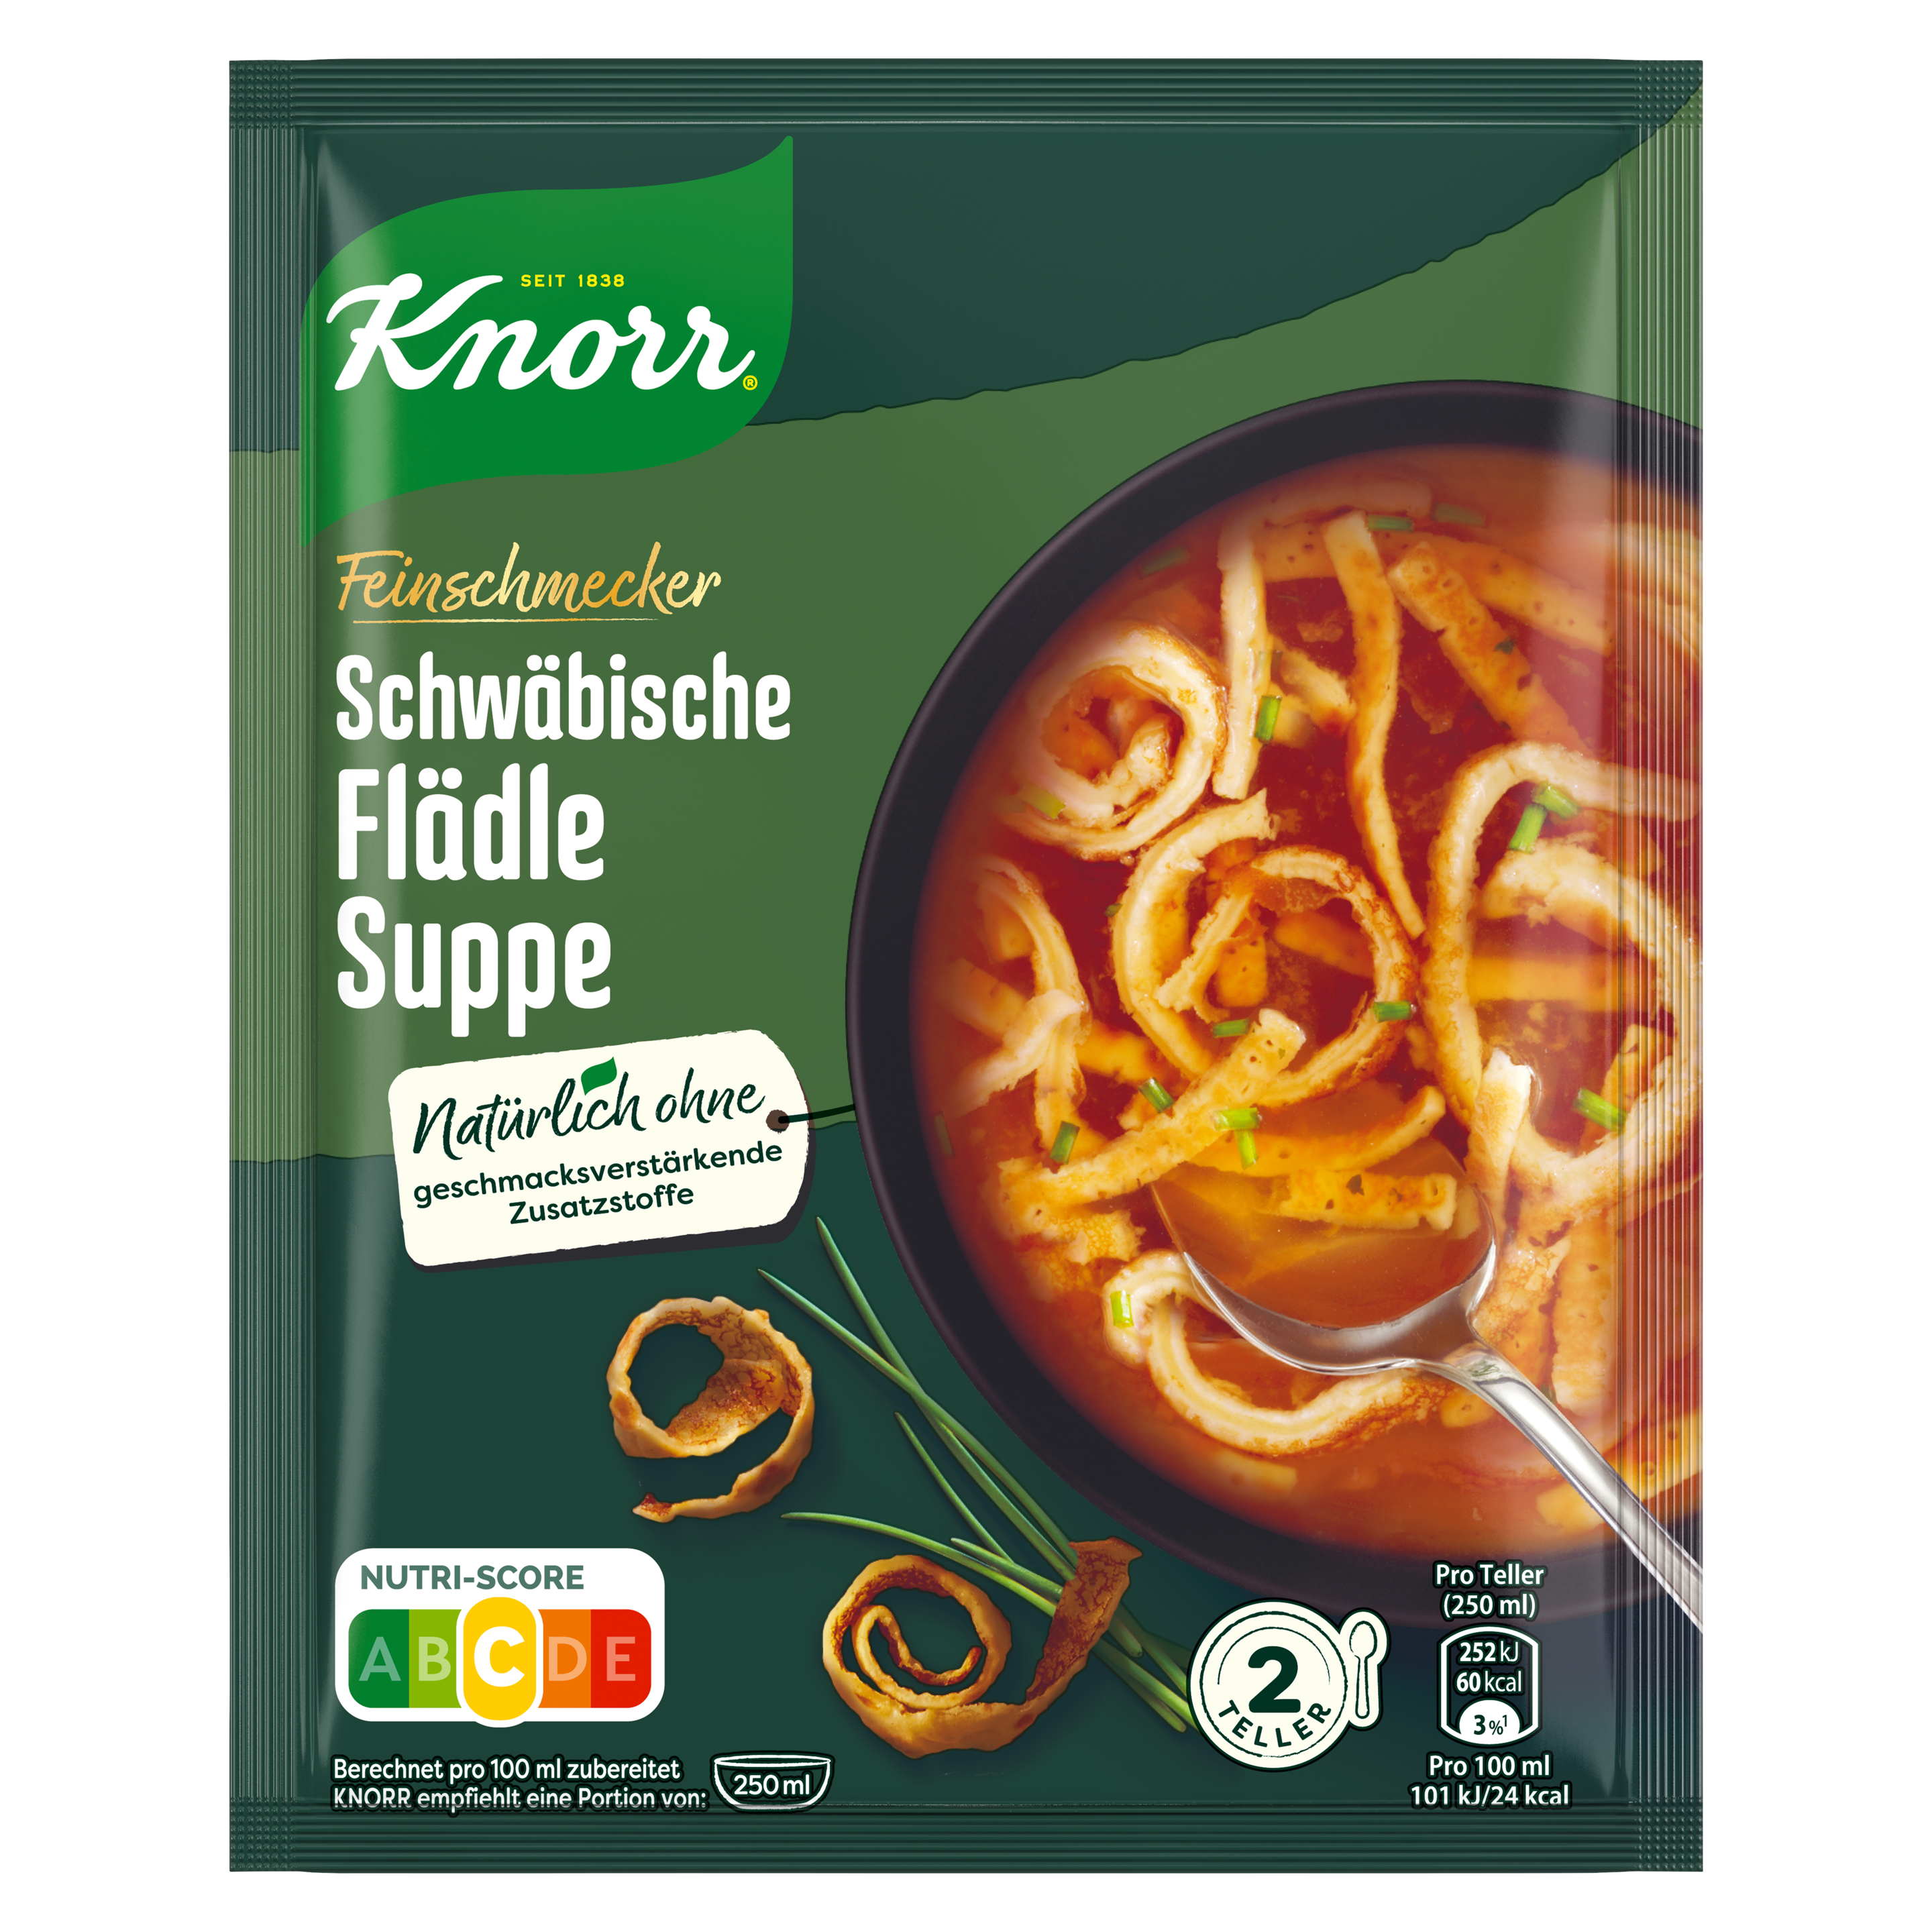 Knorr Feinschmecker Schwäbische Flädle Suppe 500ml Beutel